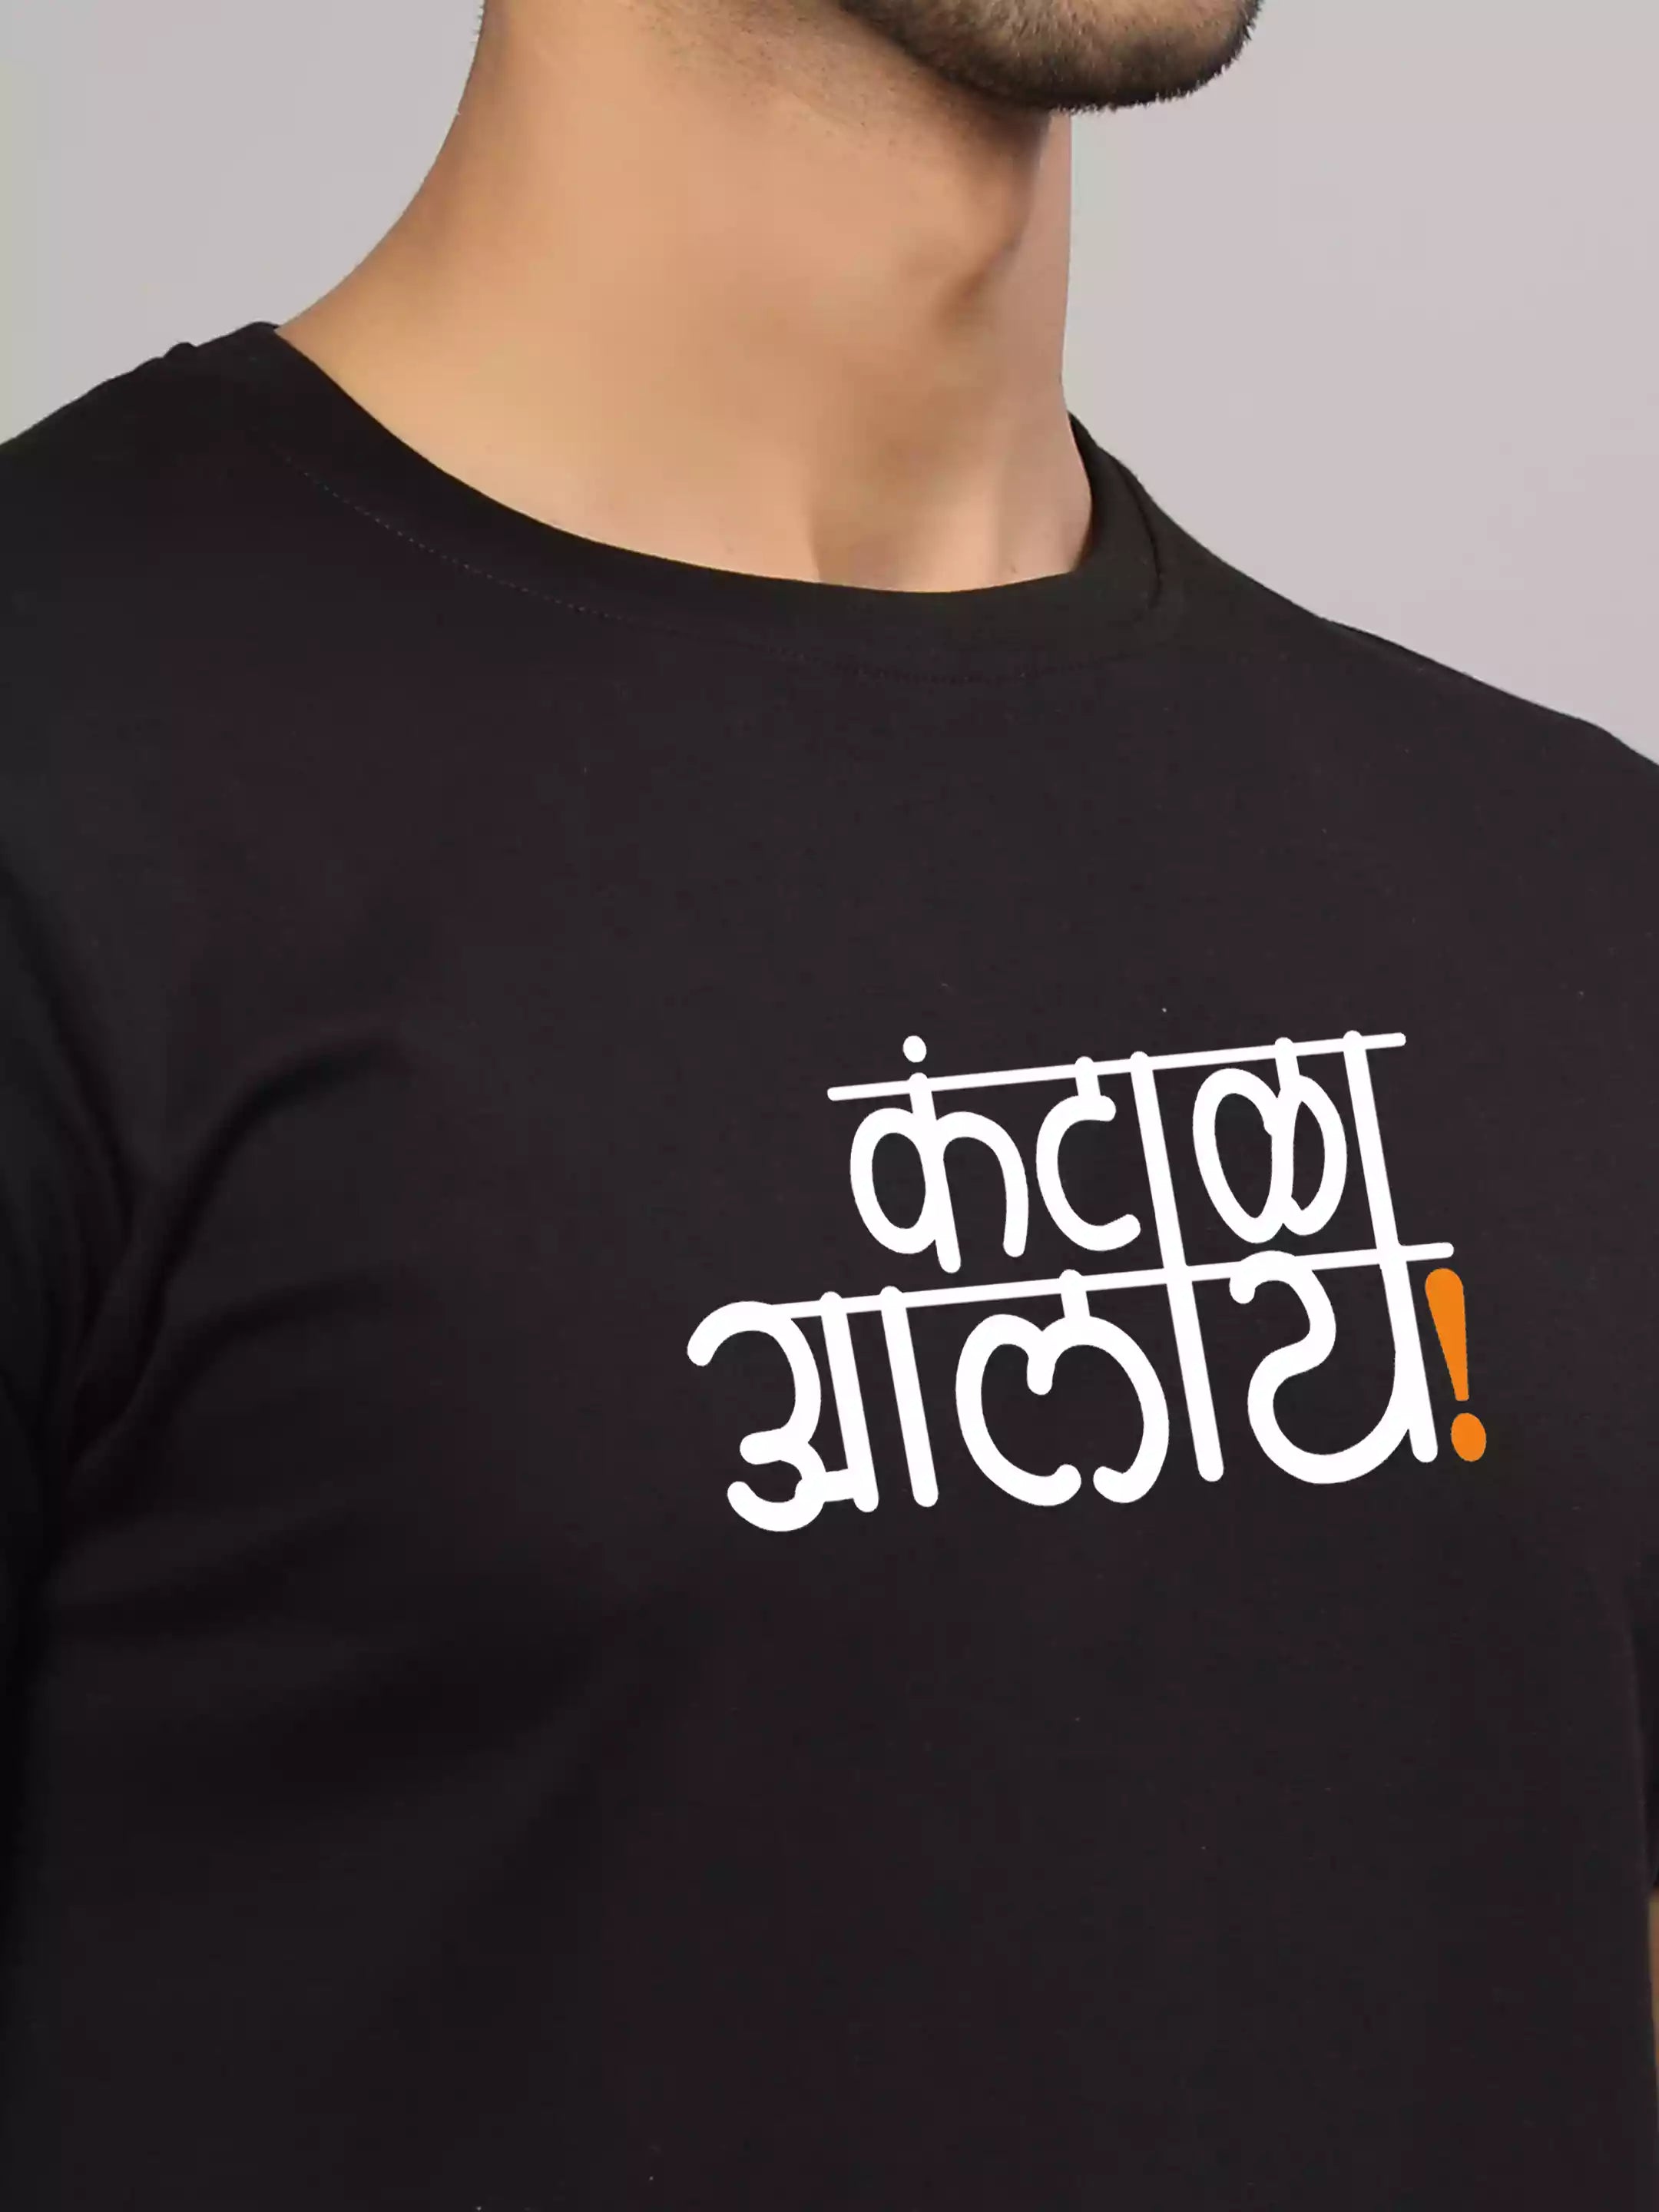 Kantala Alay - Sukhiaatma Unisex Marathi Graphic Printed Black T-shirt